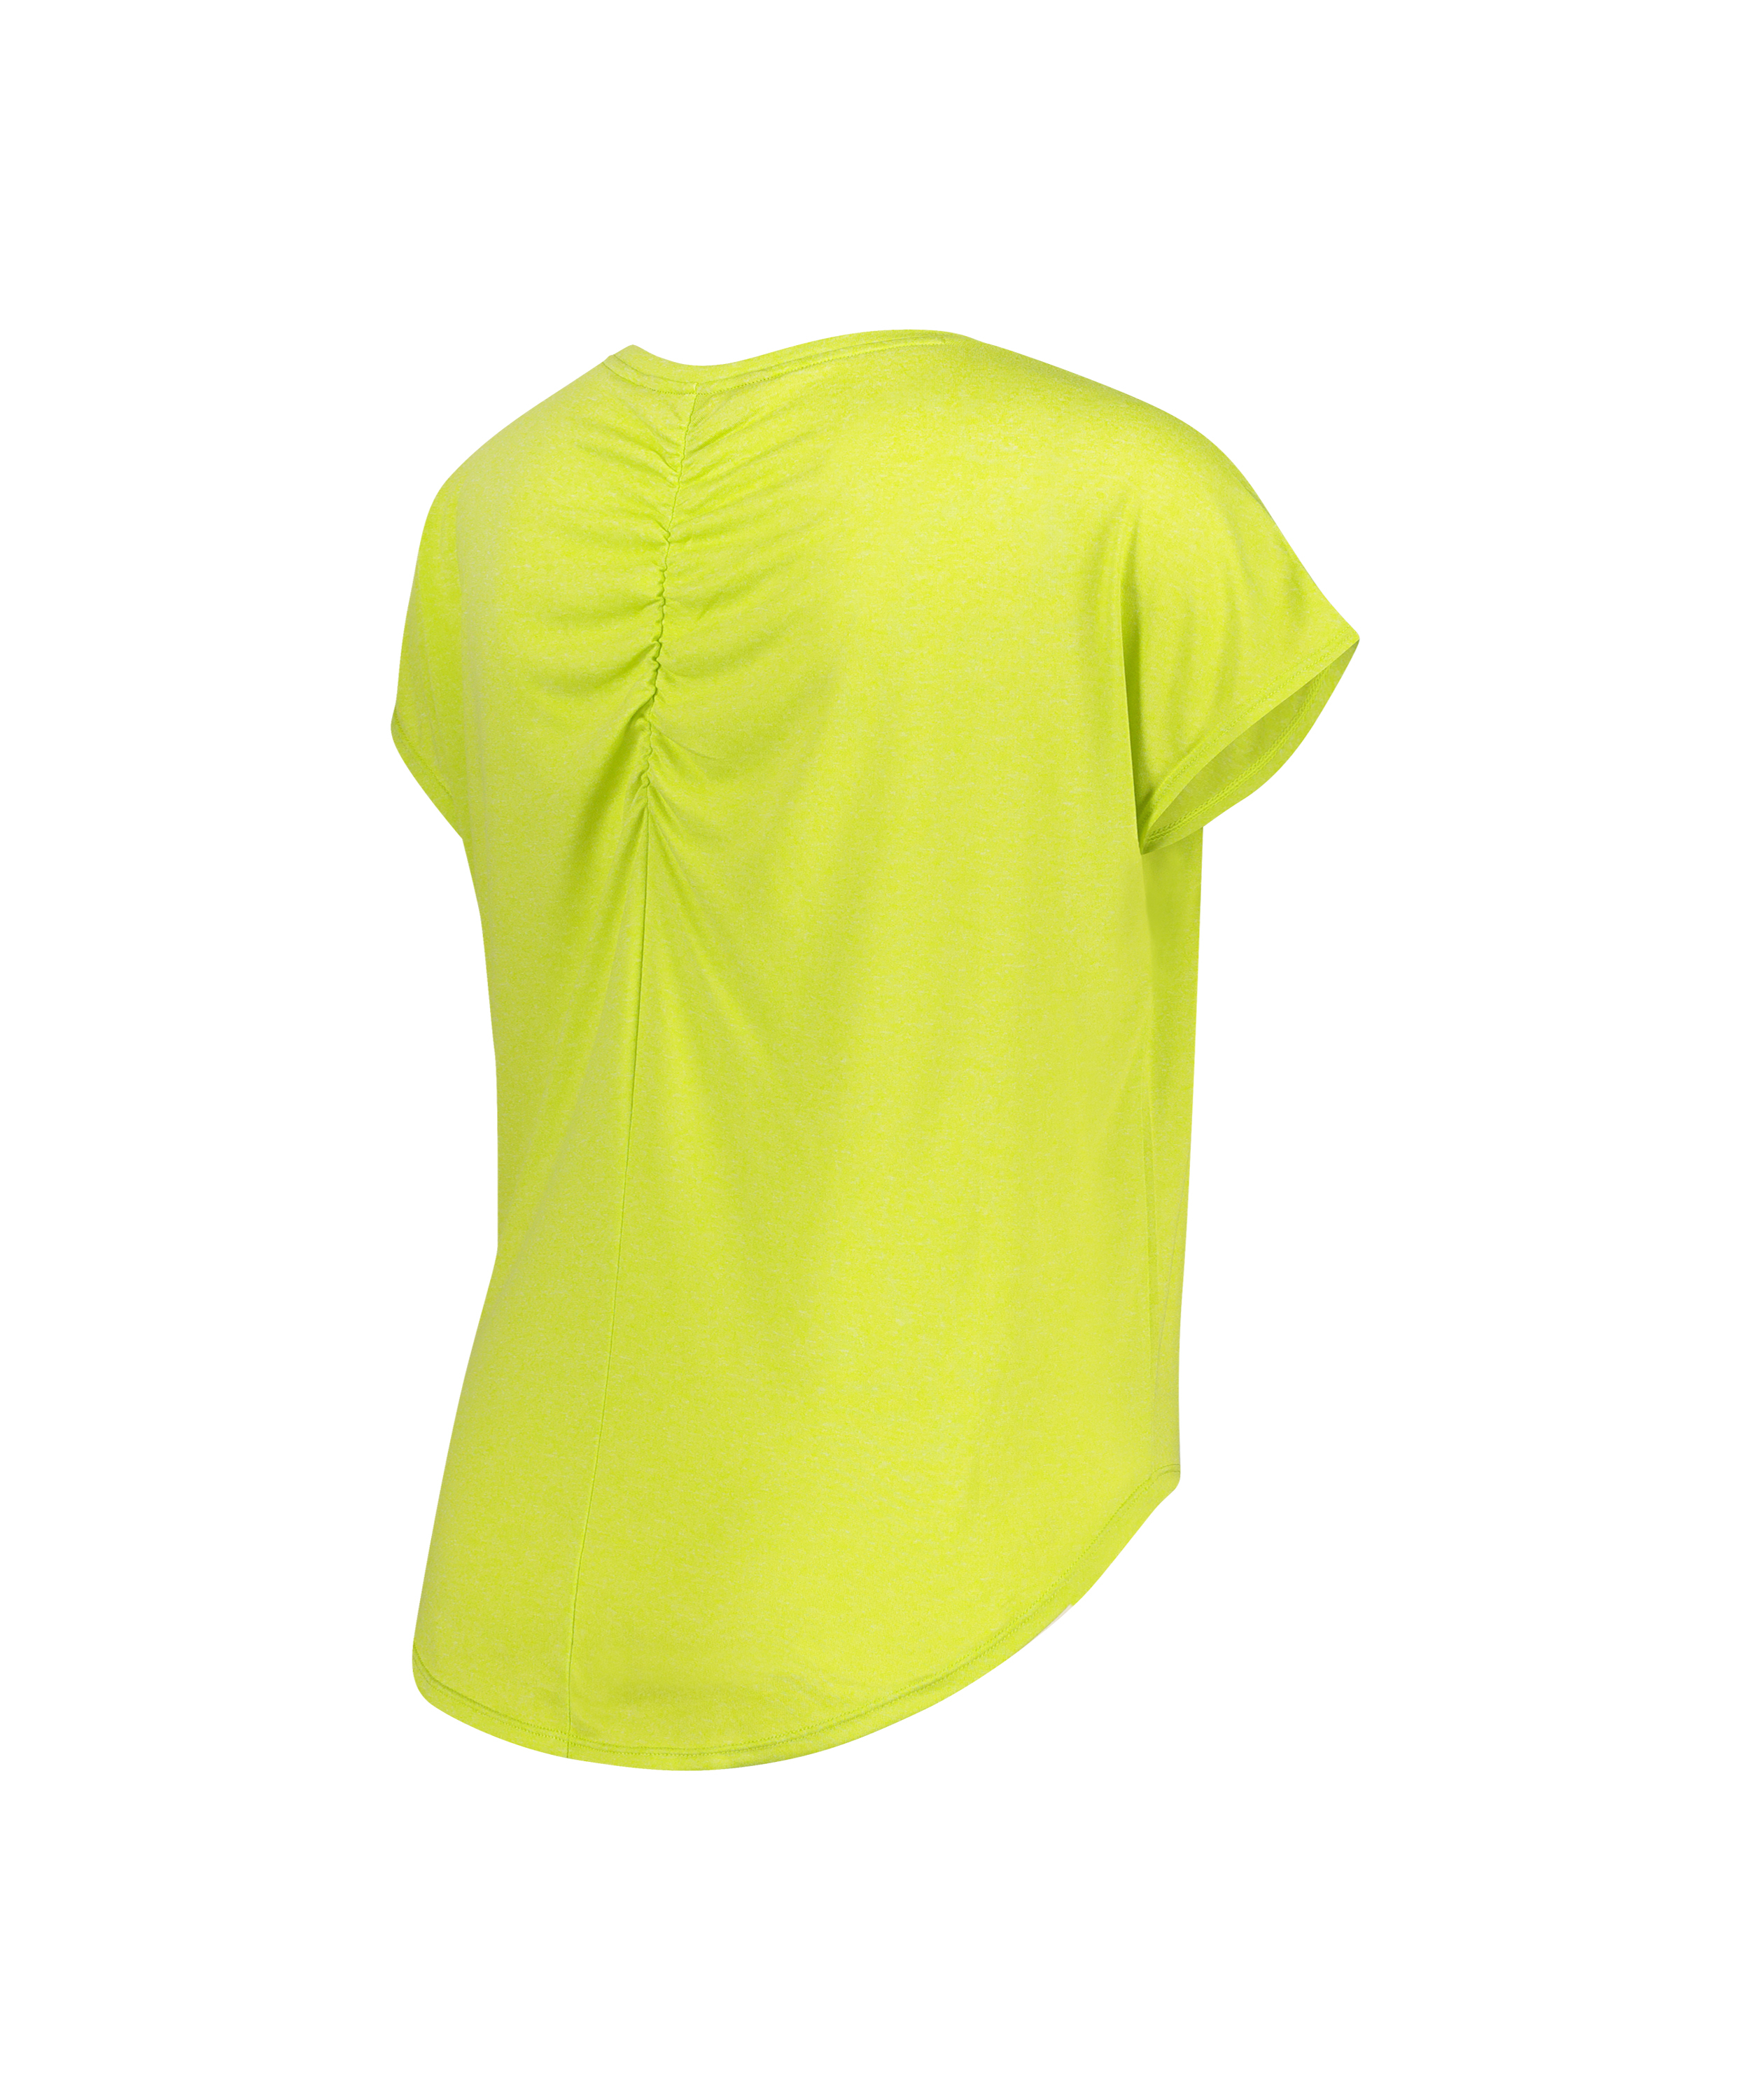 HKMX Asana Sport T-shirt, Green, main